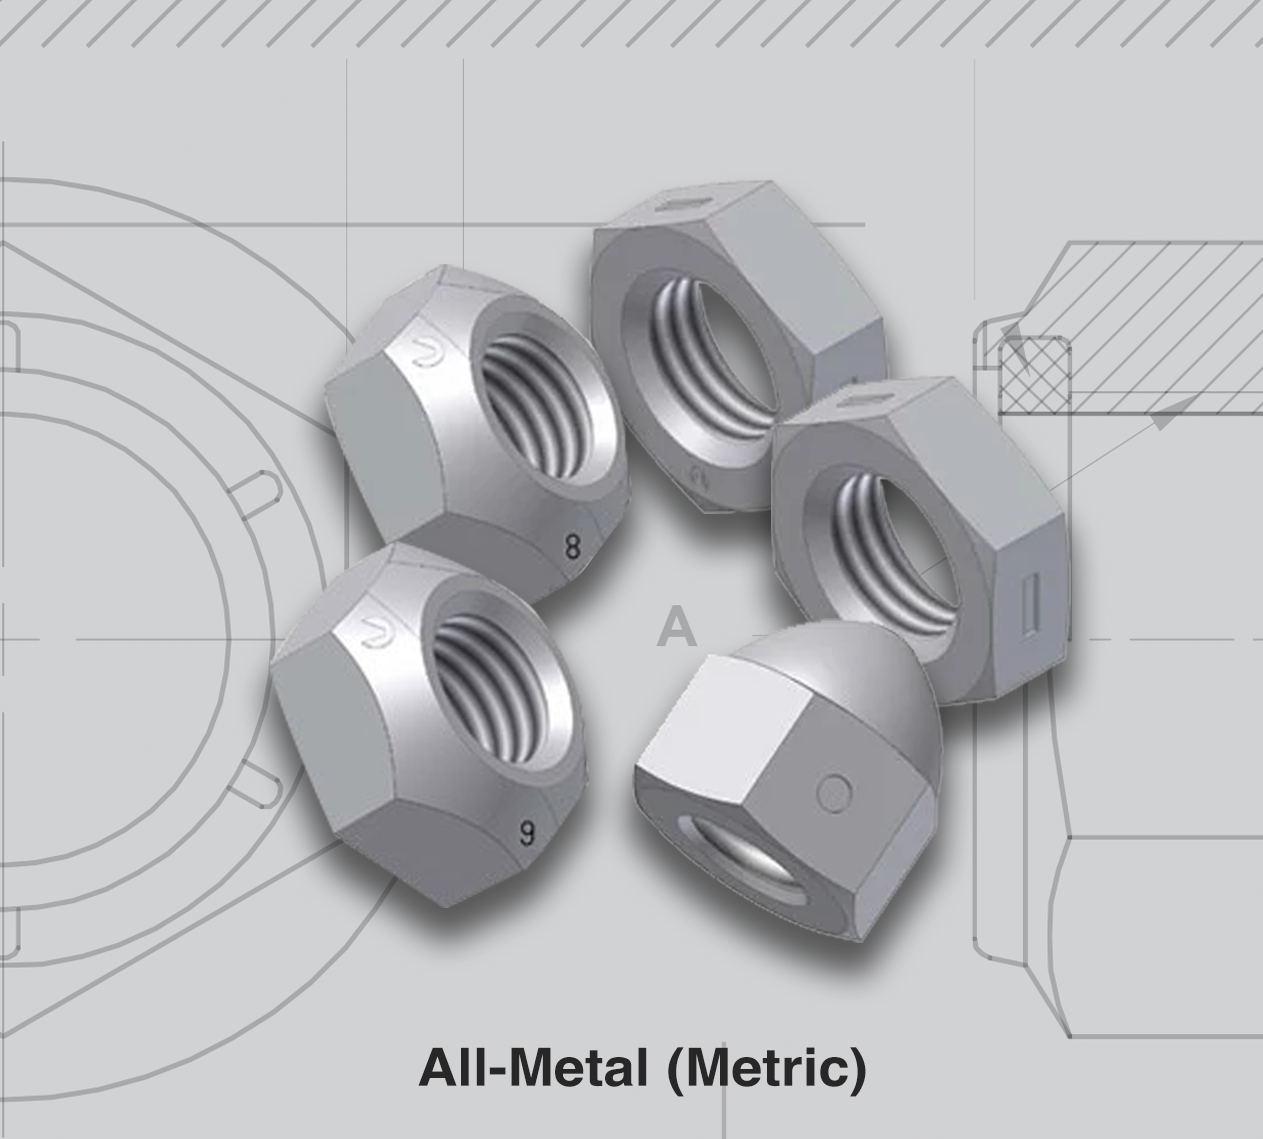 All-Metal (Metric)